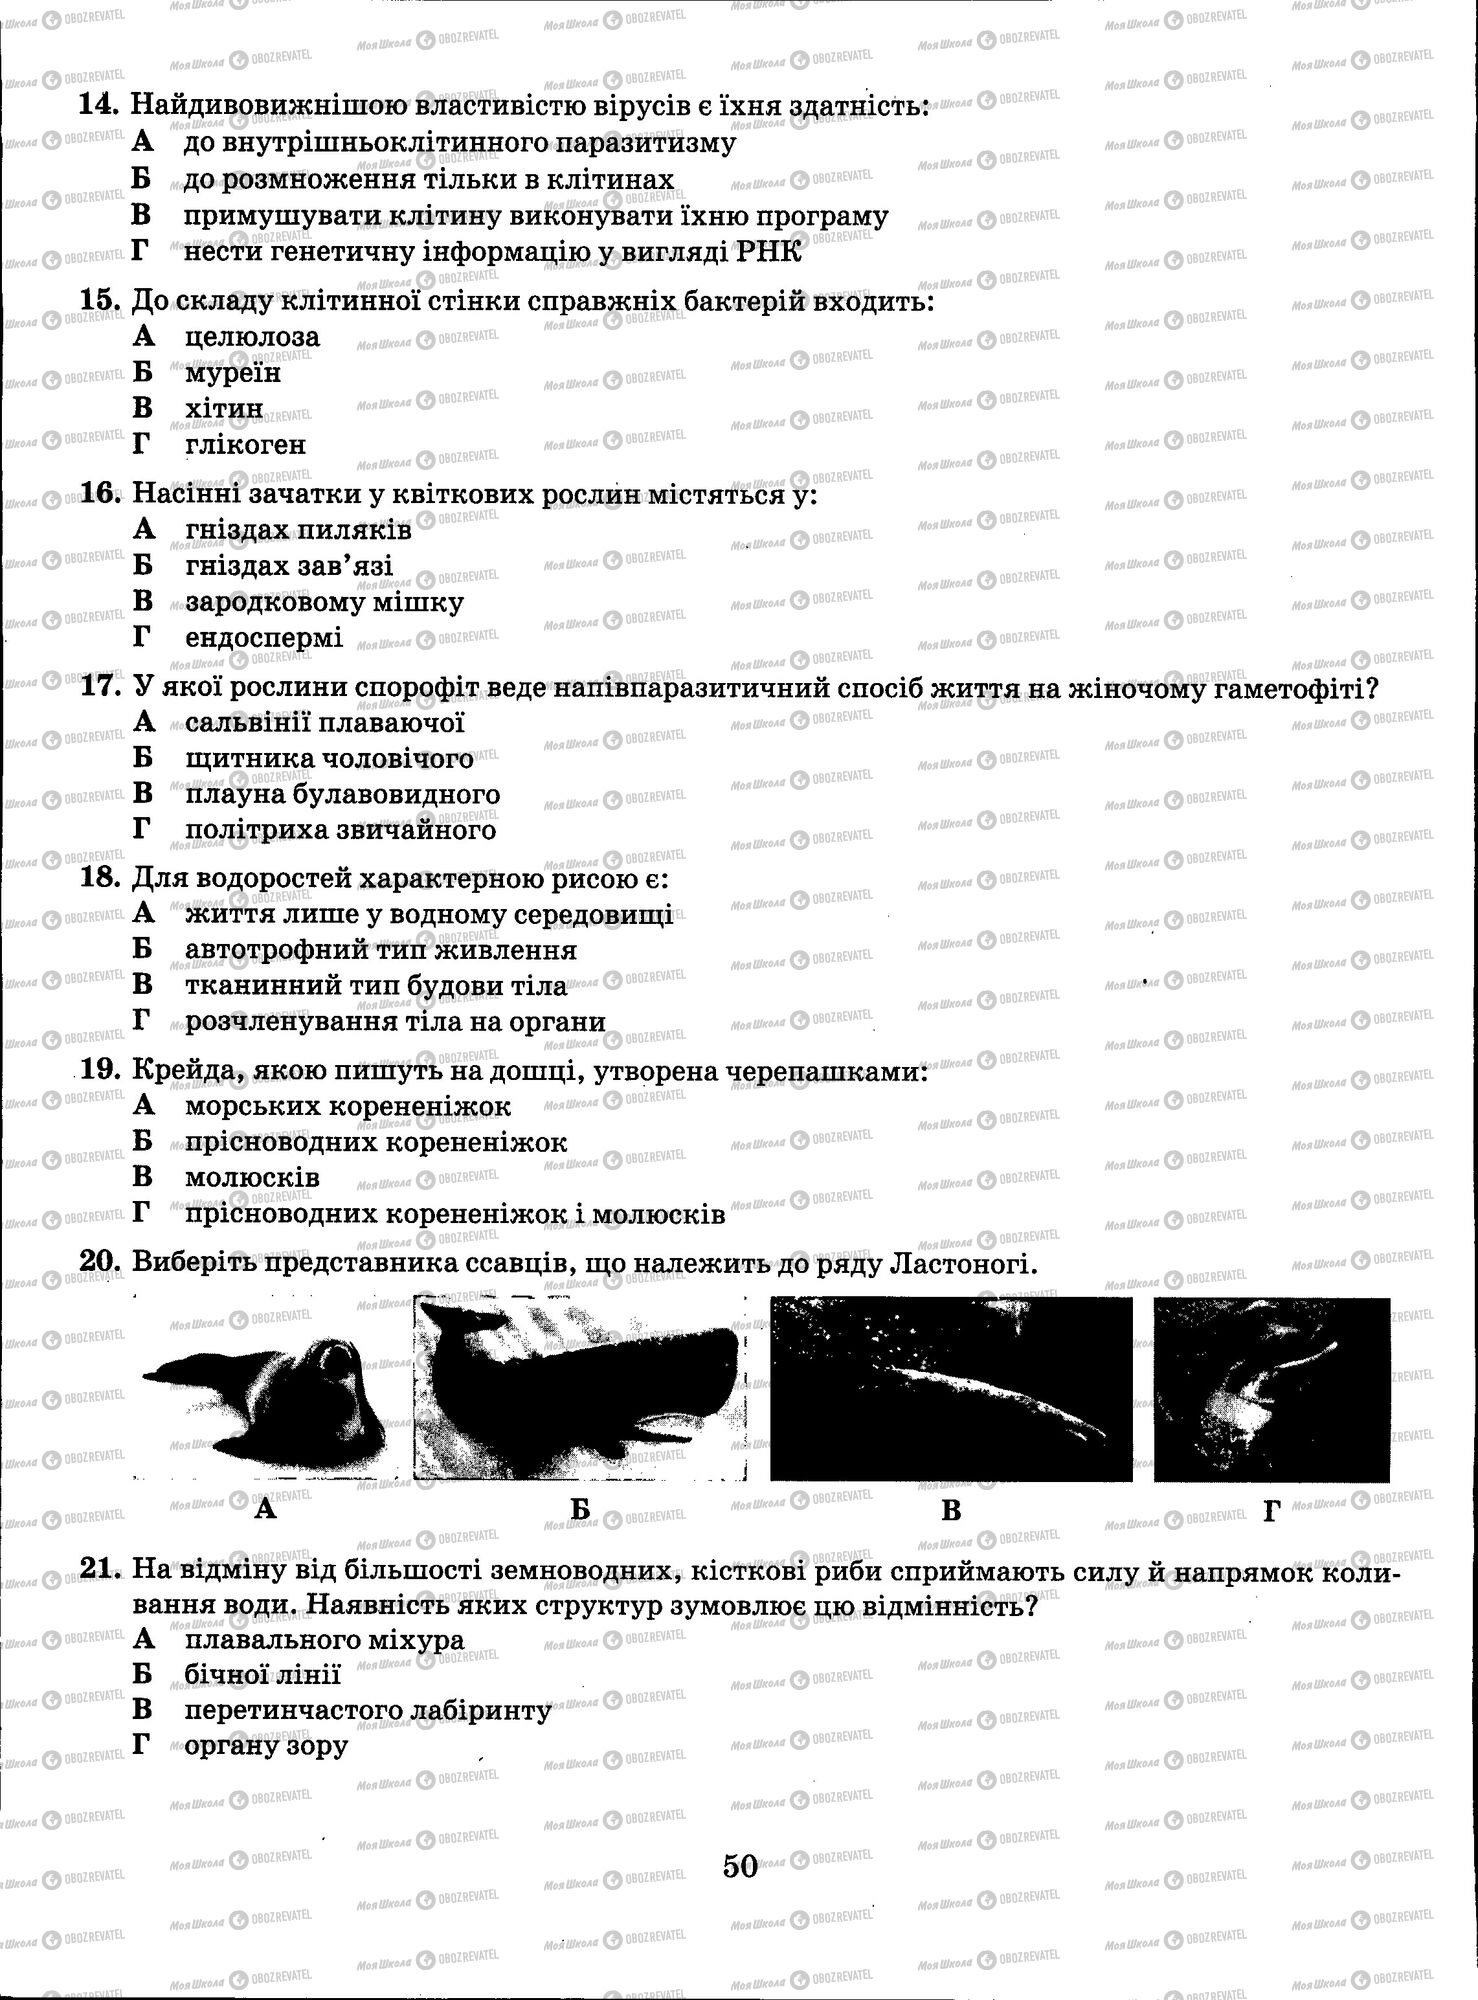 ЗНО Биология 11 класс страница 050